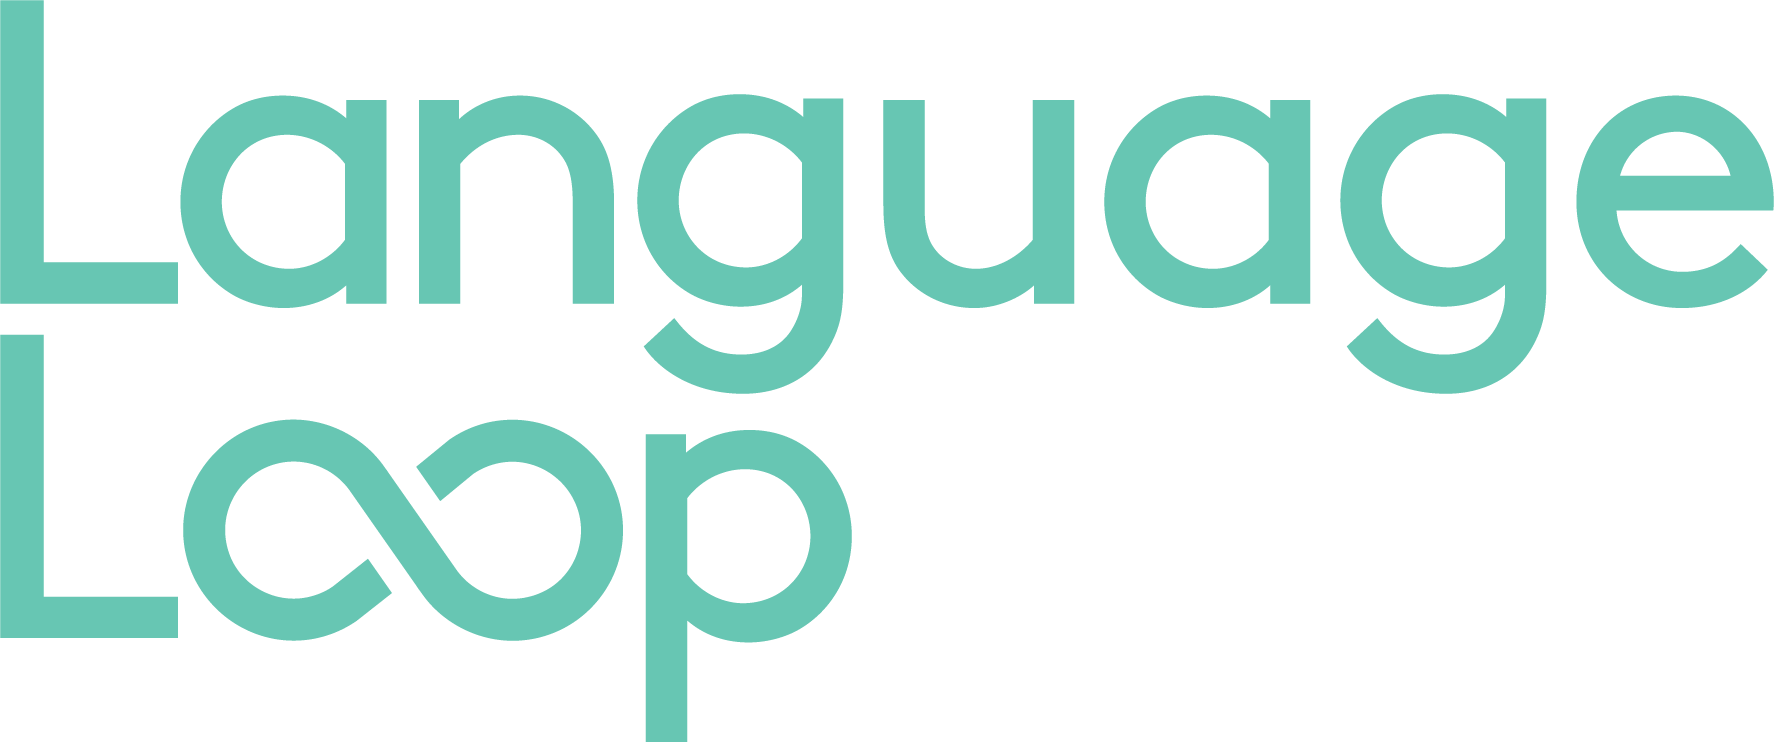 LanguageLoop Logo